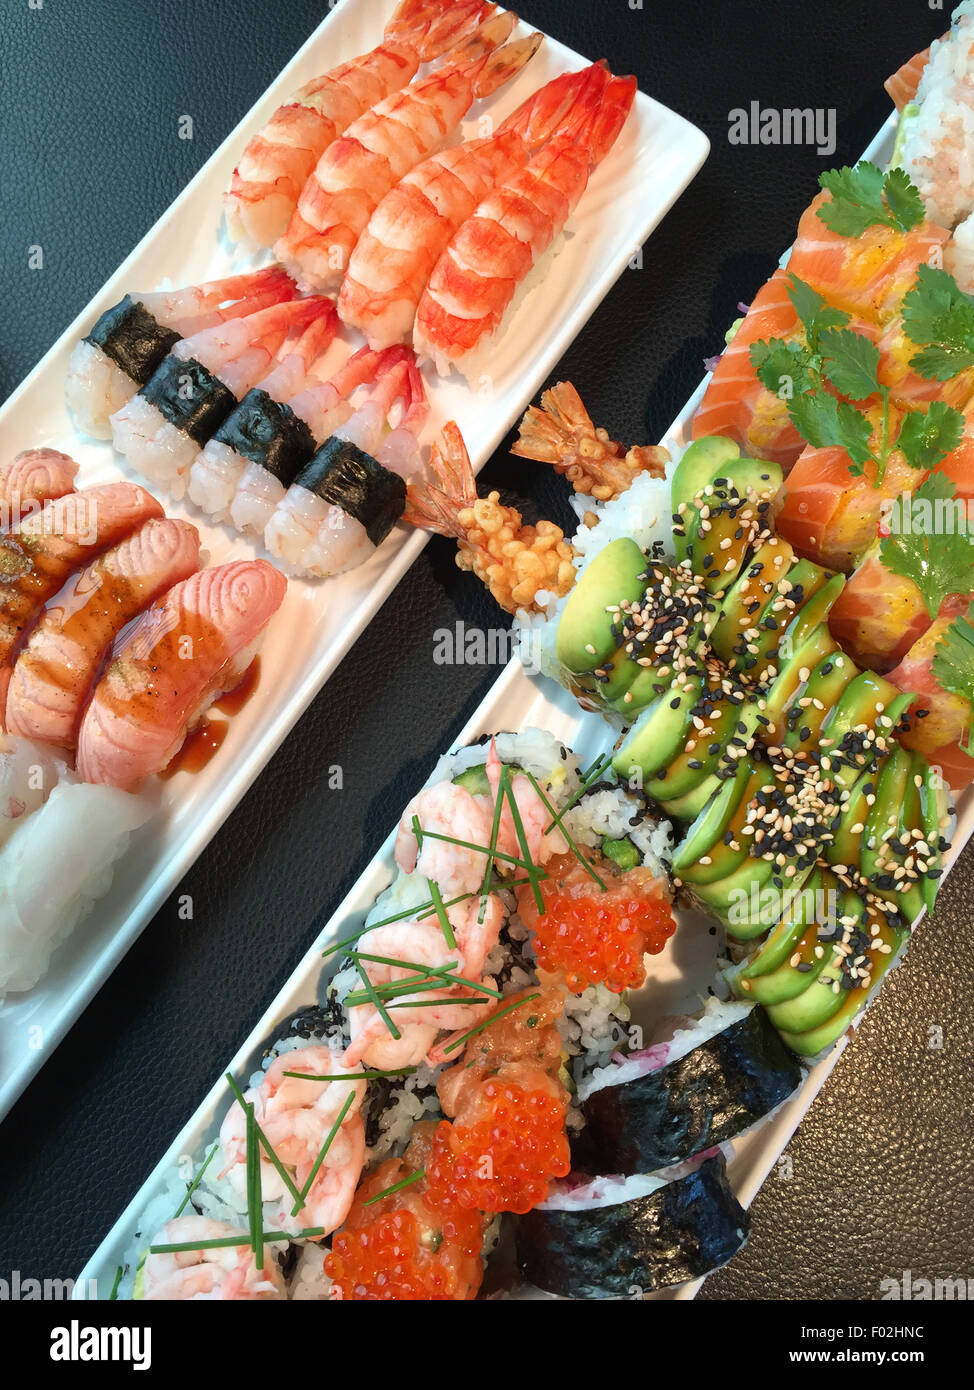 Gros plan d'un assortiment de sushis avec petits pains nigiri et maki californien Banque D'Images